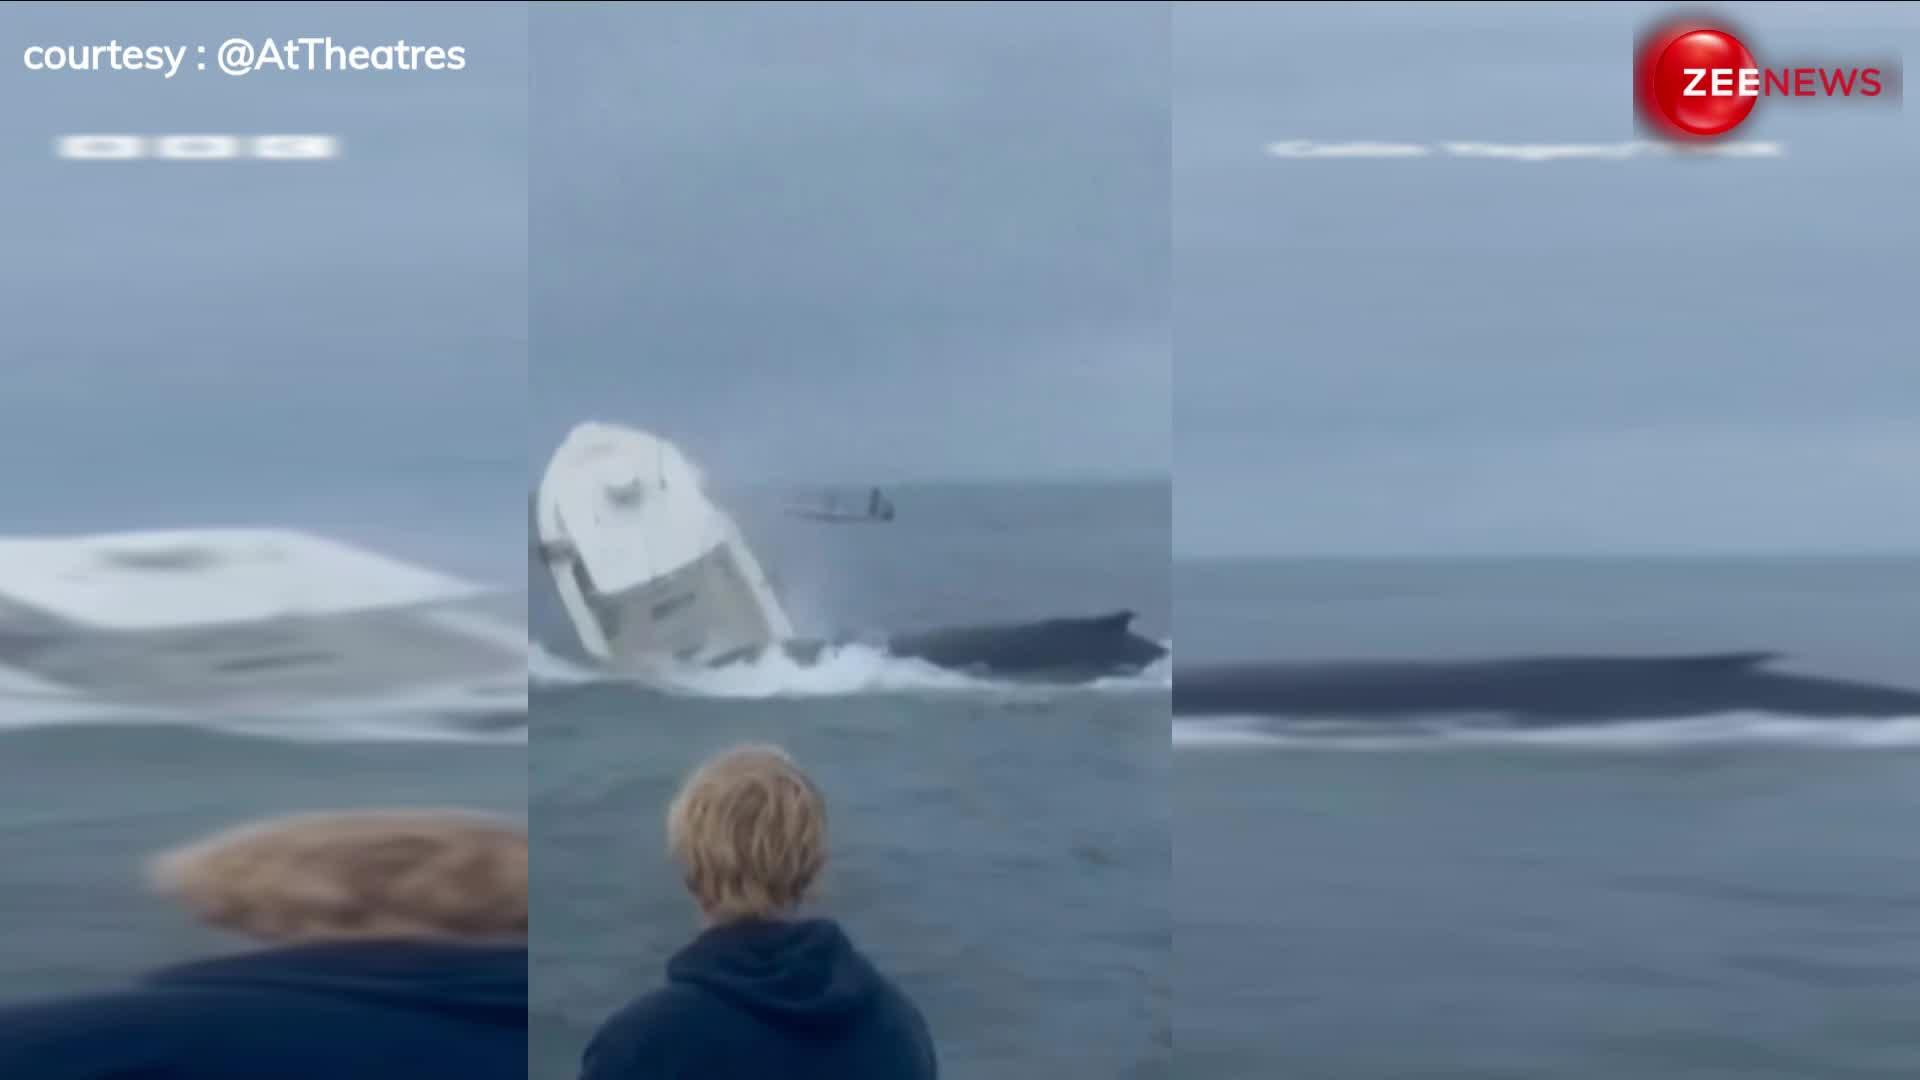 व्हेल ने नाव को बना दिया खिलौना, लगाई ऐसी छलांग के पलट गई 23 फीट लंबी फिशिंग बोट, सामने आया EXCLUSIVE VIDEO